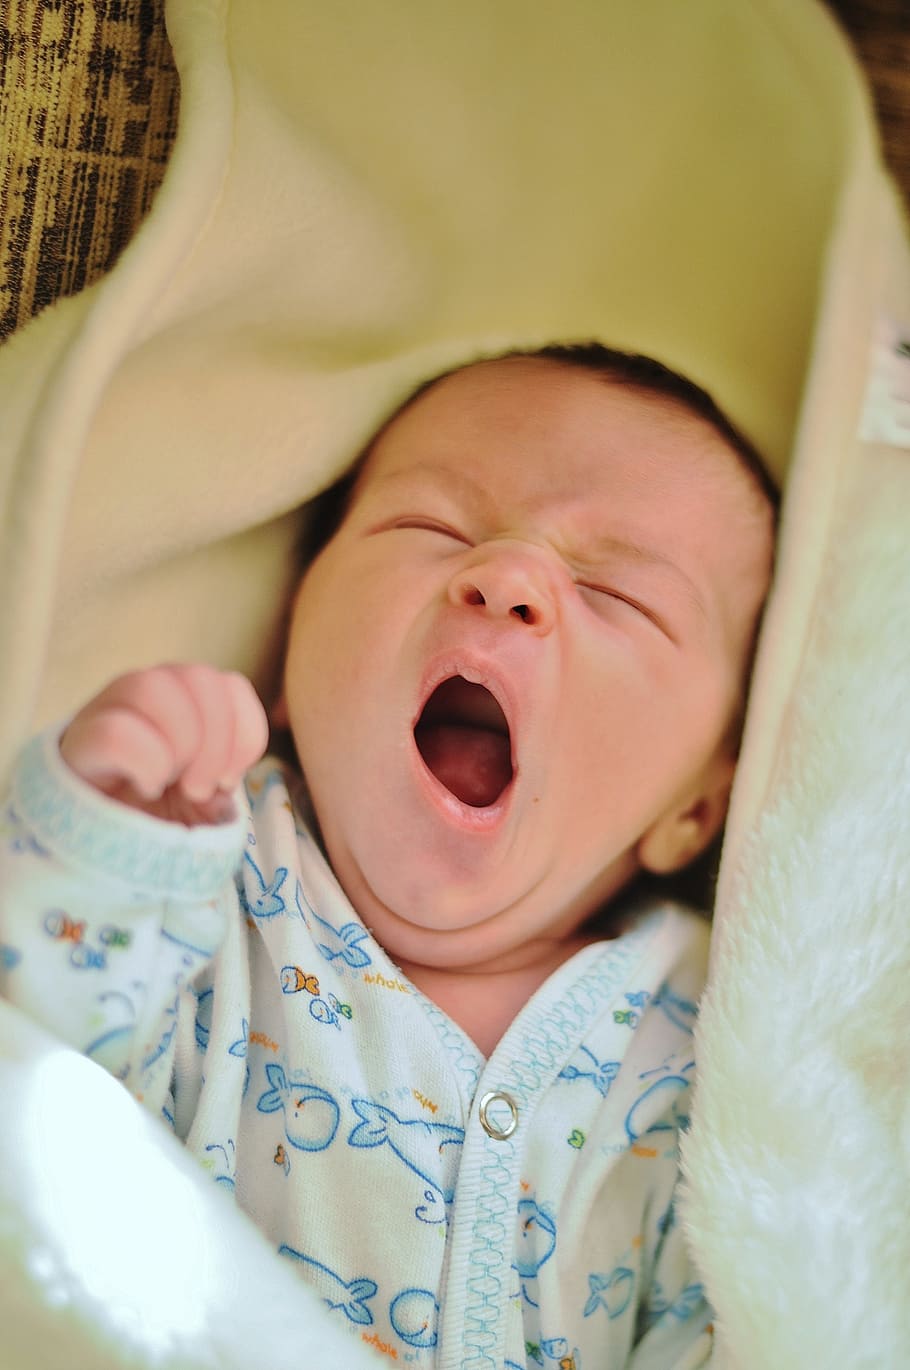 baby, wearing, onesie, yawning, blanket, white, shirt, yellow, textile, newborn